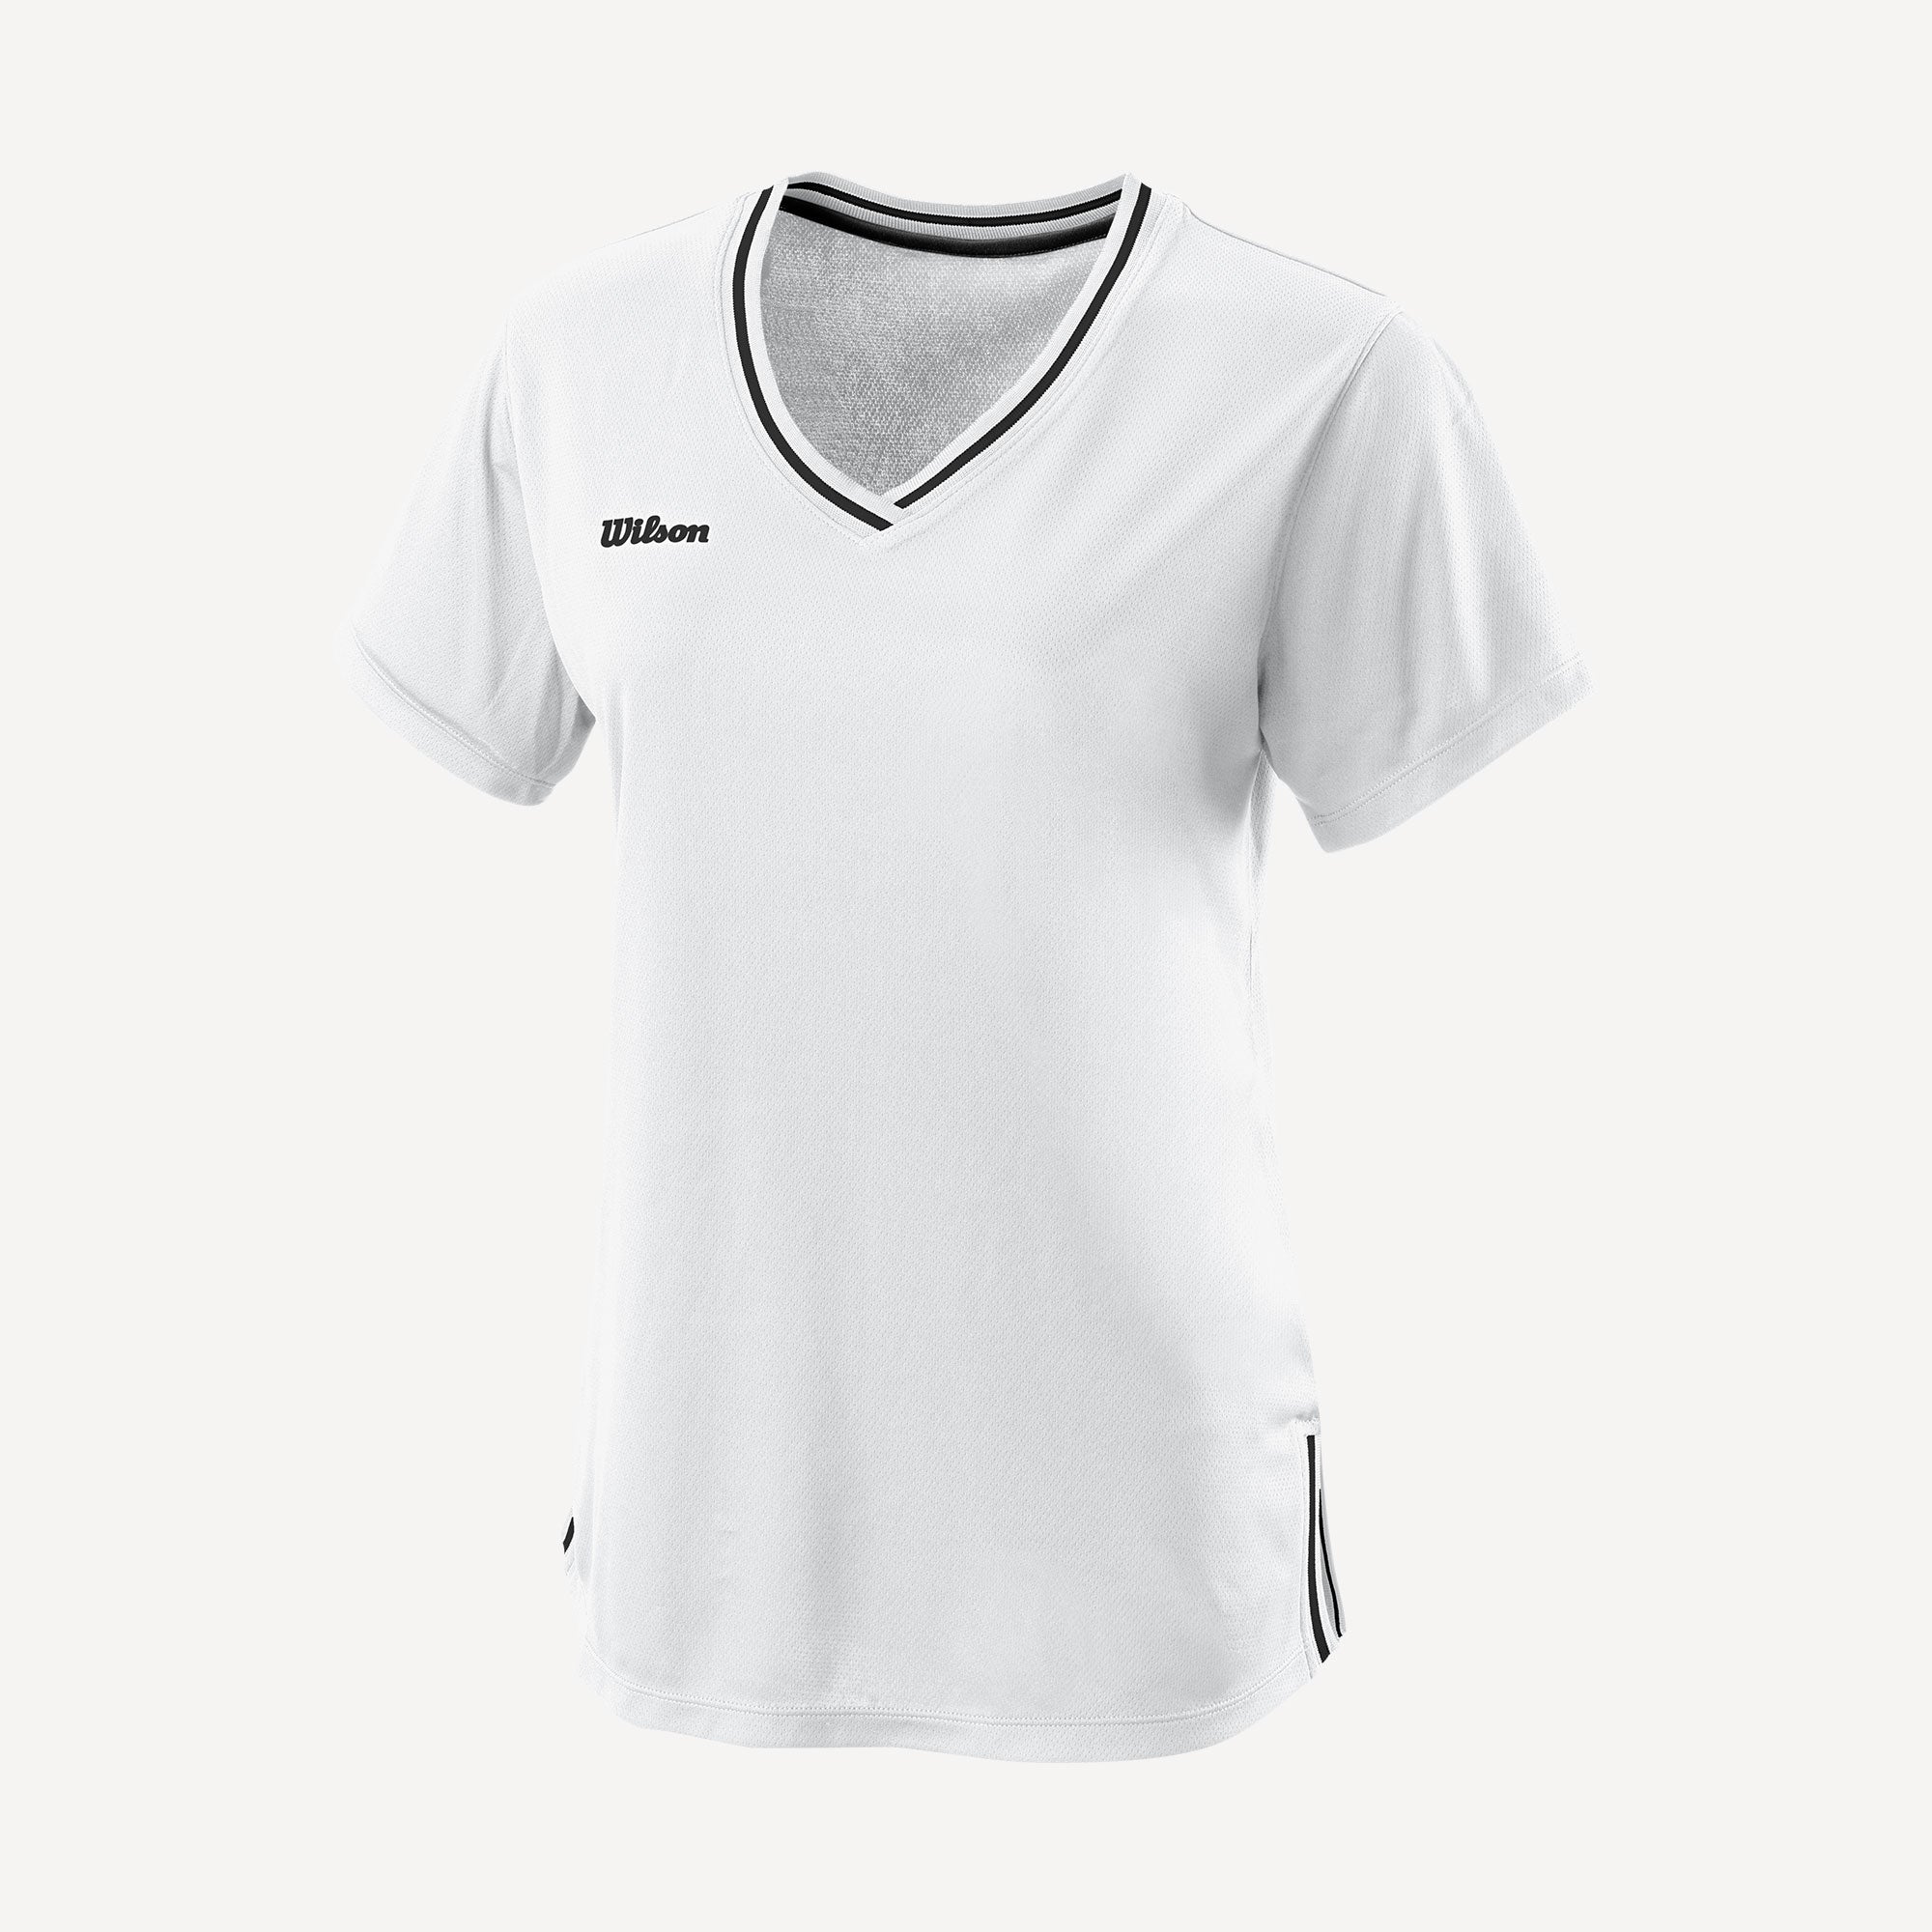 Wilson Team 2 Women's V-Neck Tennis Shirt White (1)